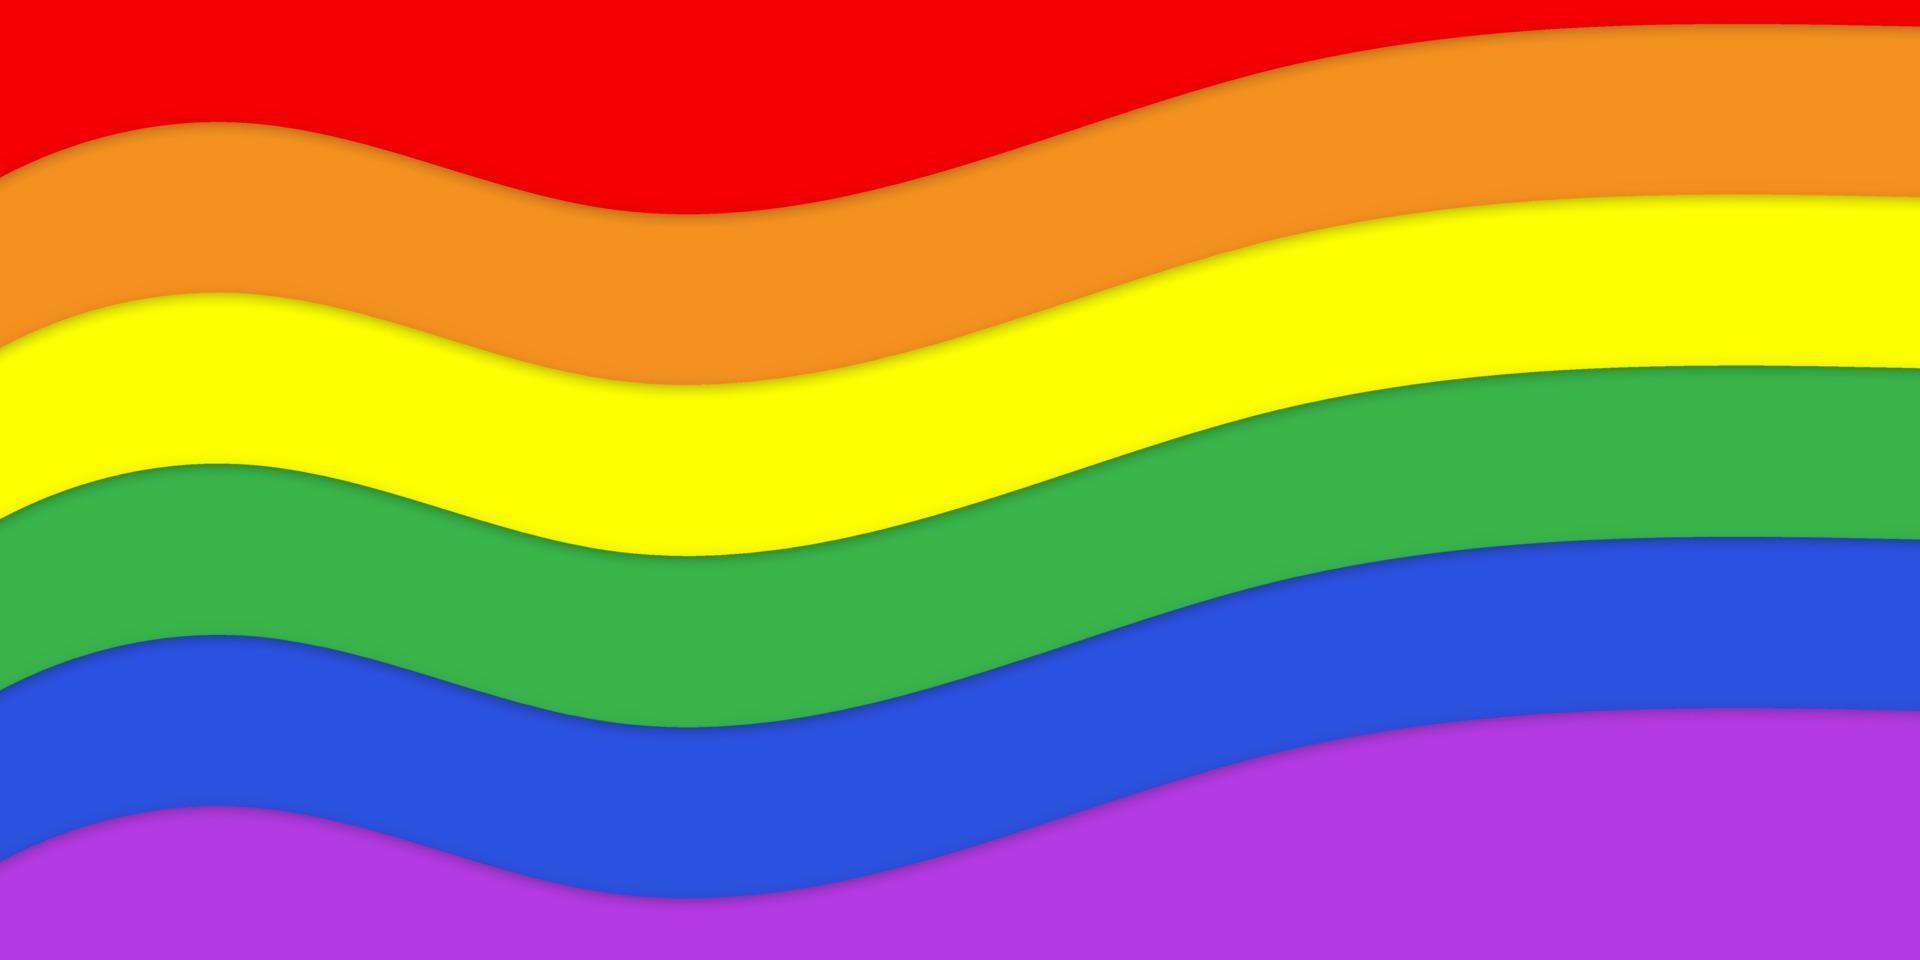 Stolz Hintergrund. schwenkte farbige flagge von lgbt, schwulen, bisexuellen, transgender, homosexuellen menschen. regenbogenfahnensymbol der gleichheitstoleranz gegenüber der lgbtq-gemeinschaft. Vektor-Illustration. vektor